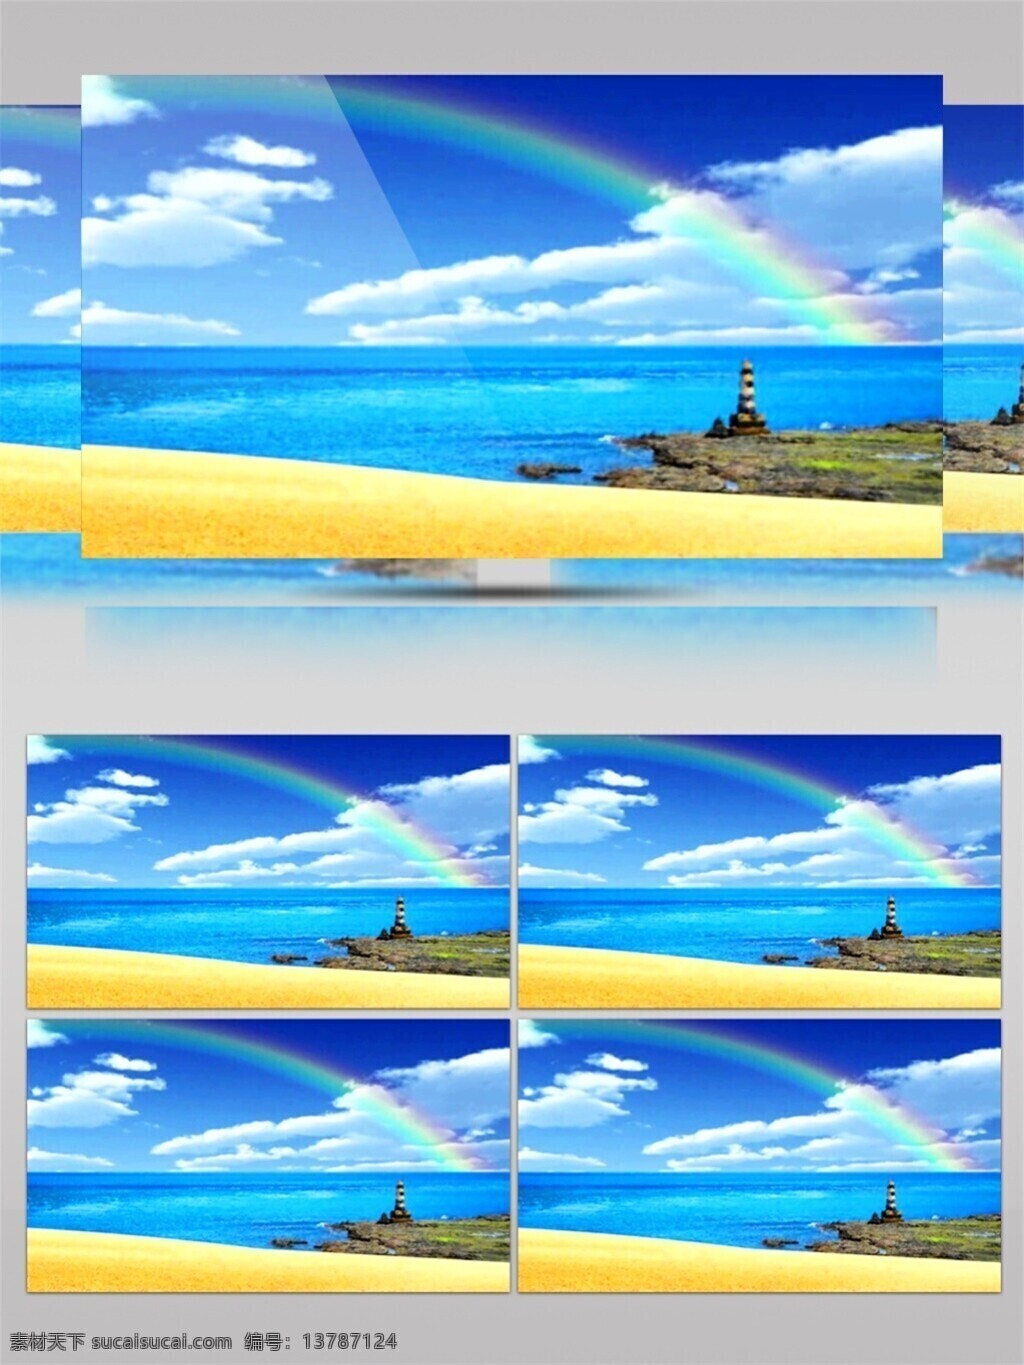 彩虹 海滩 视频 沙滩 度假 旅游 手机壁纸 视觉享受 电脑屏幕保护